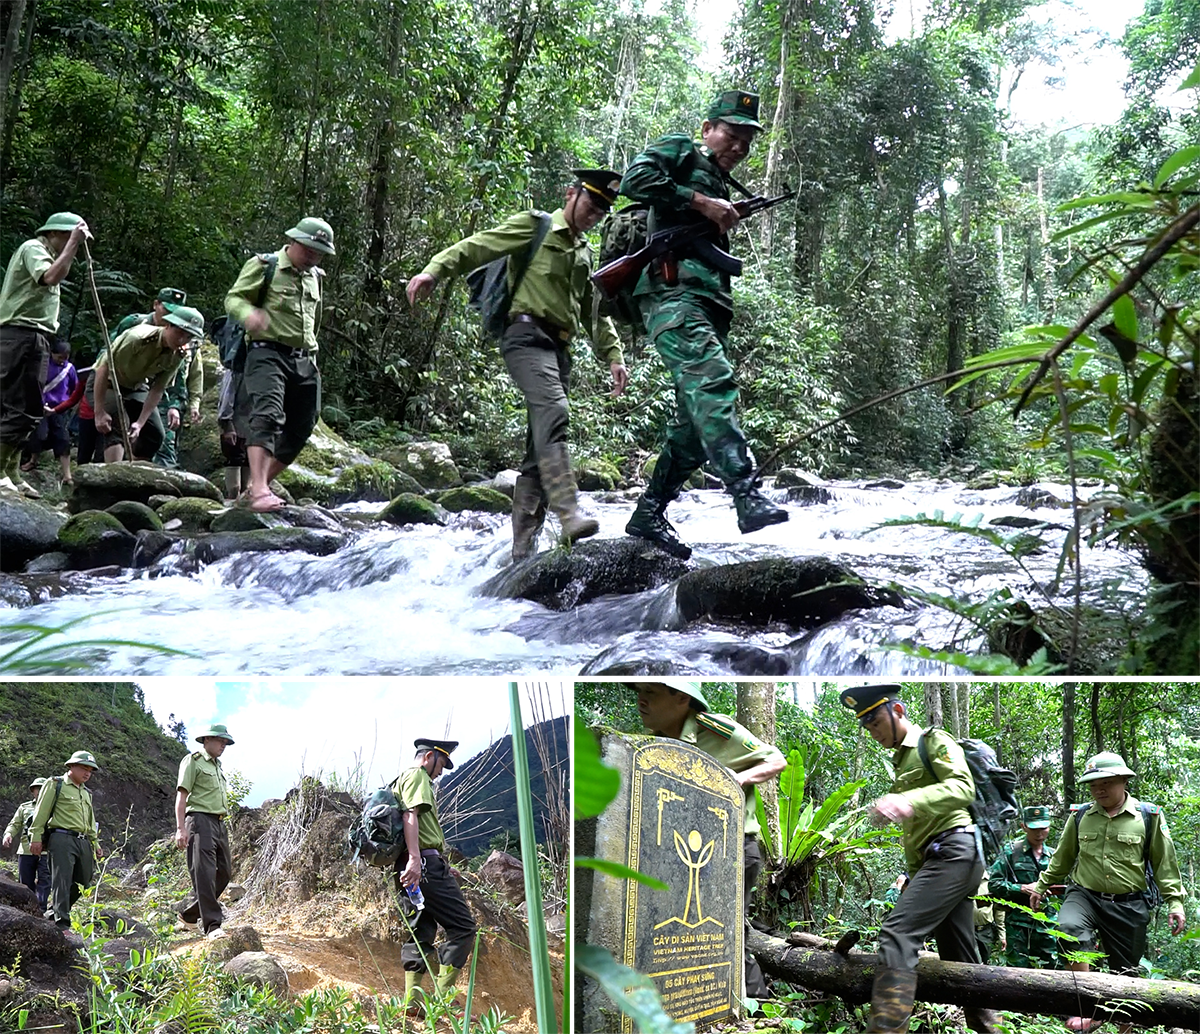 Cán bộ Ban Quản lý Khu Bảo tồn thiên nhiên Pù Hoạt tuần tra, bảo vệ rừng.